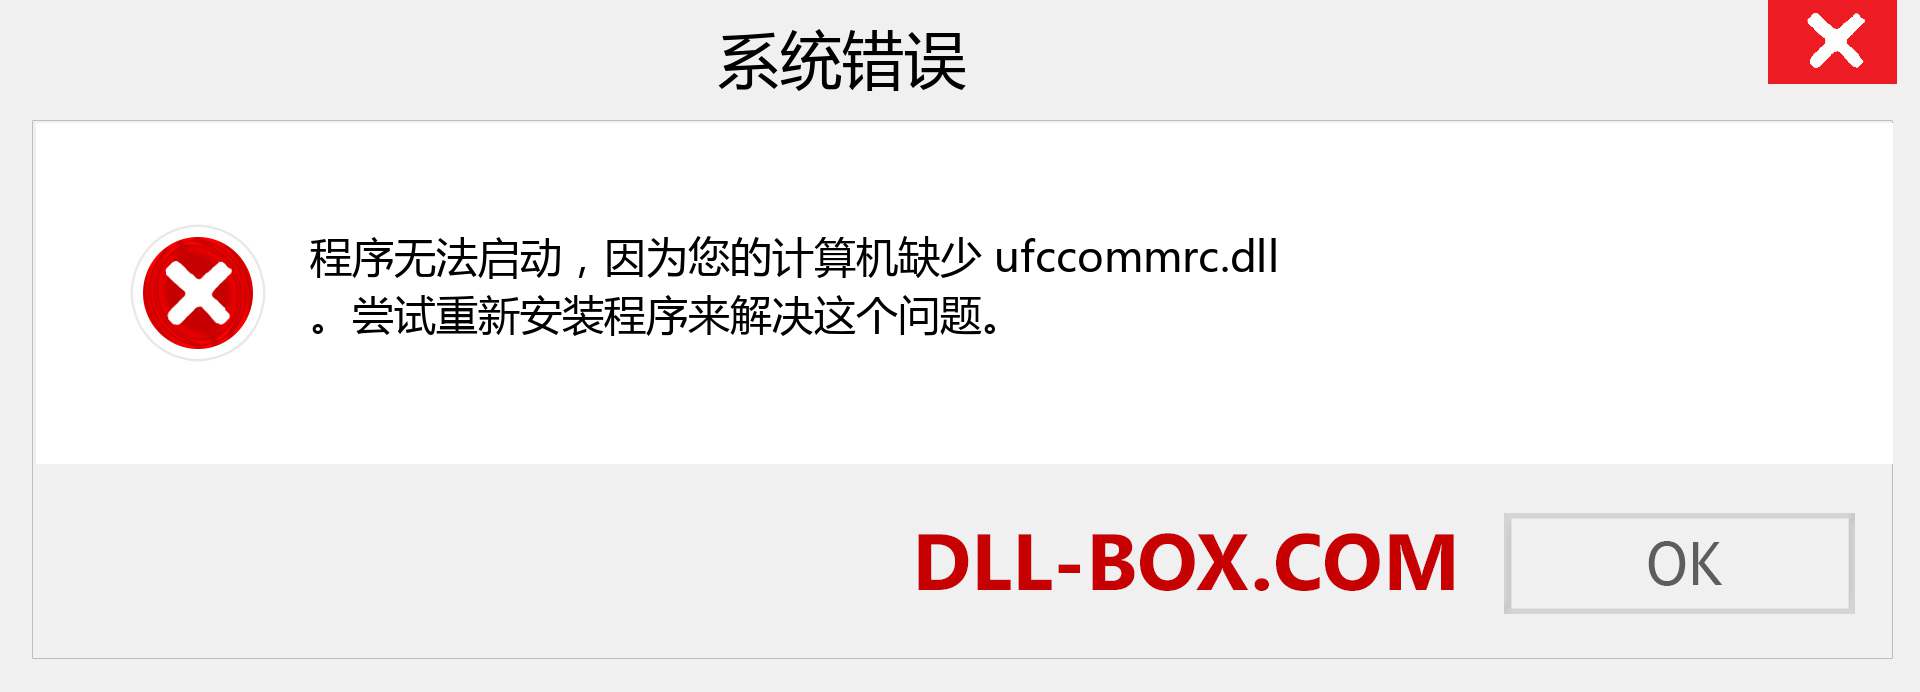 ufccommrc.dll 文件丢失？。 适用于 Windows 7、8、10 的下载 - 修复 Windows、照片、图像上的 ufccommrc dll 丢失错误